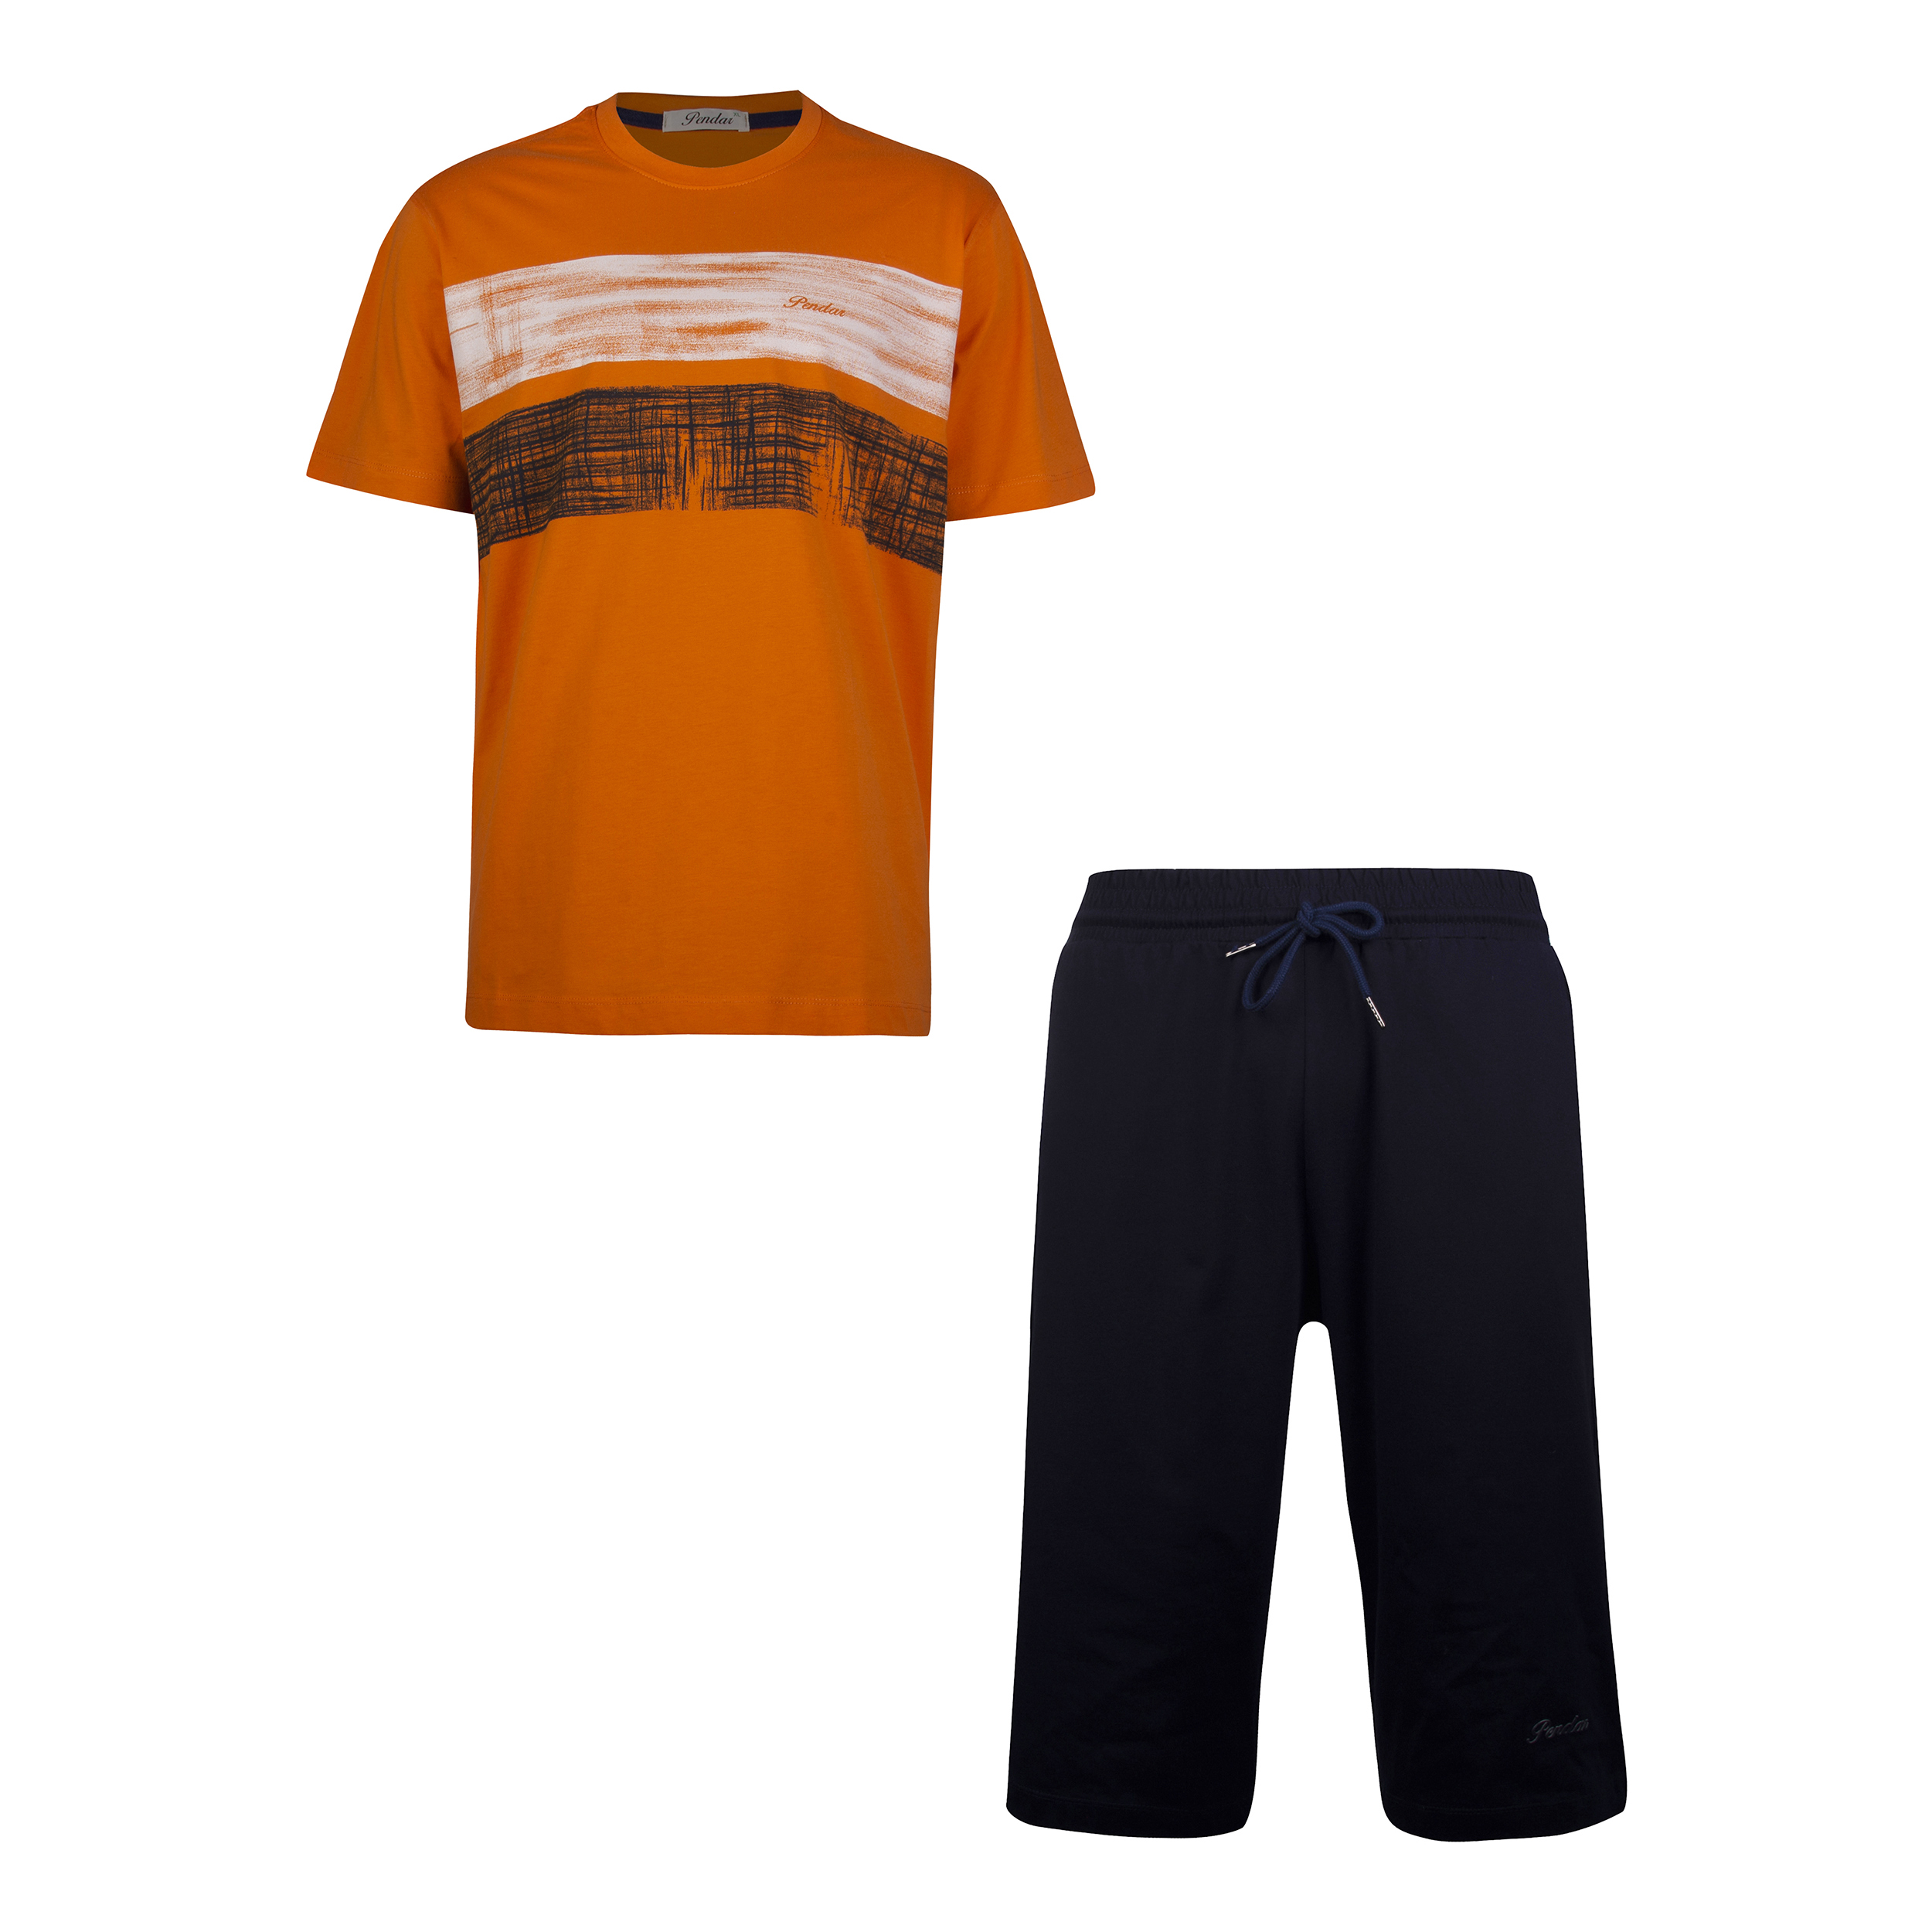 ست تی شرت و شلوارک مردانه پندار مدل B342 رنگ نارنجی